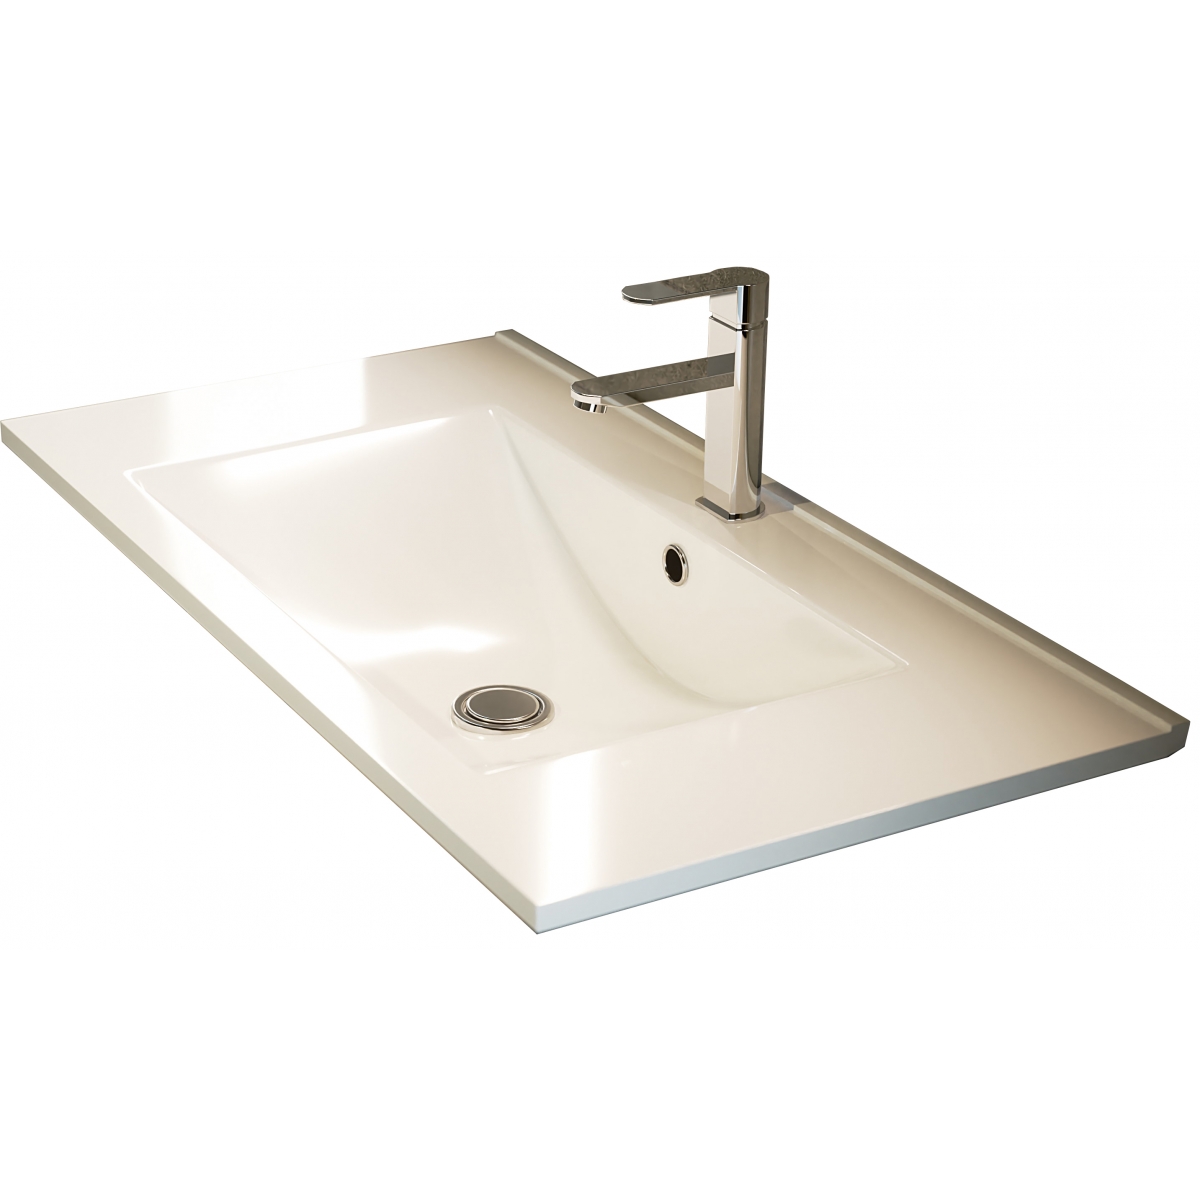 Fotos ambiente de Mueble de baño suspendido Bolton de 60 cm de ancho color Cemento con lavabo integrado [53940]